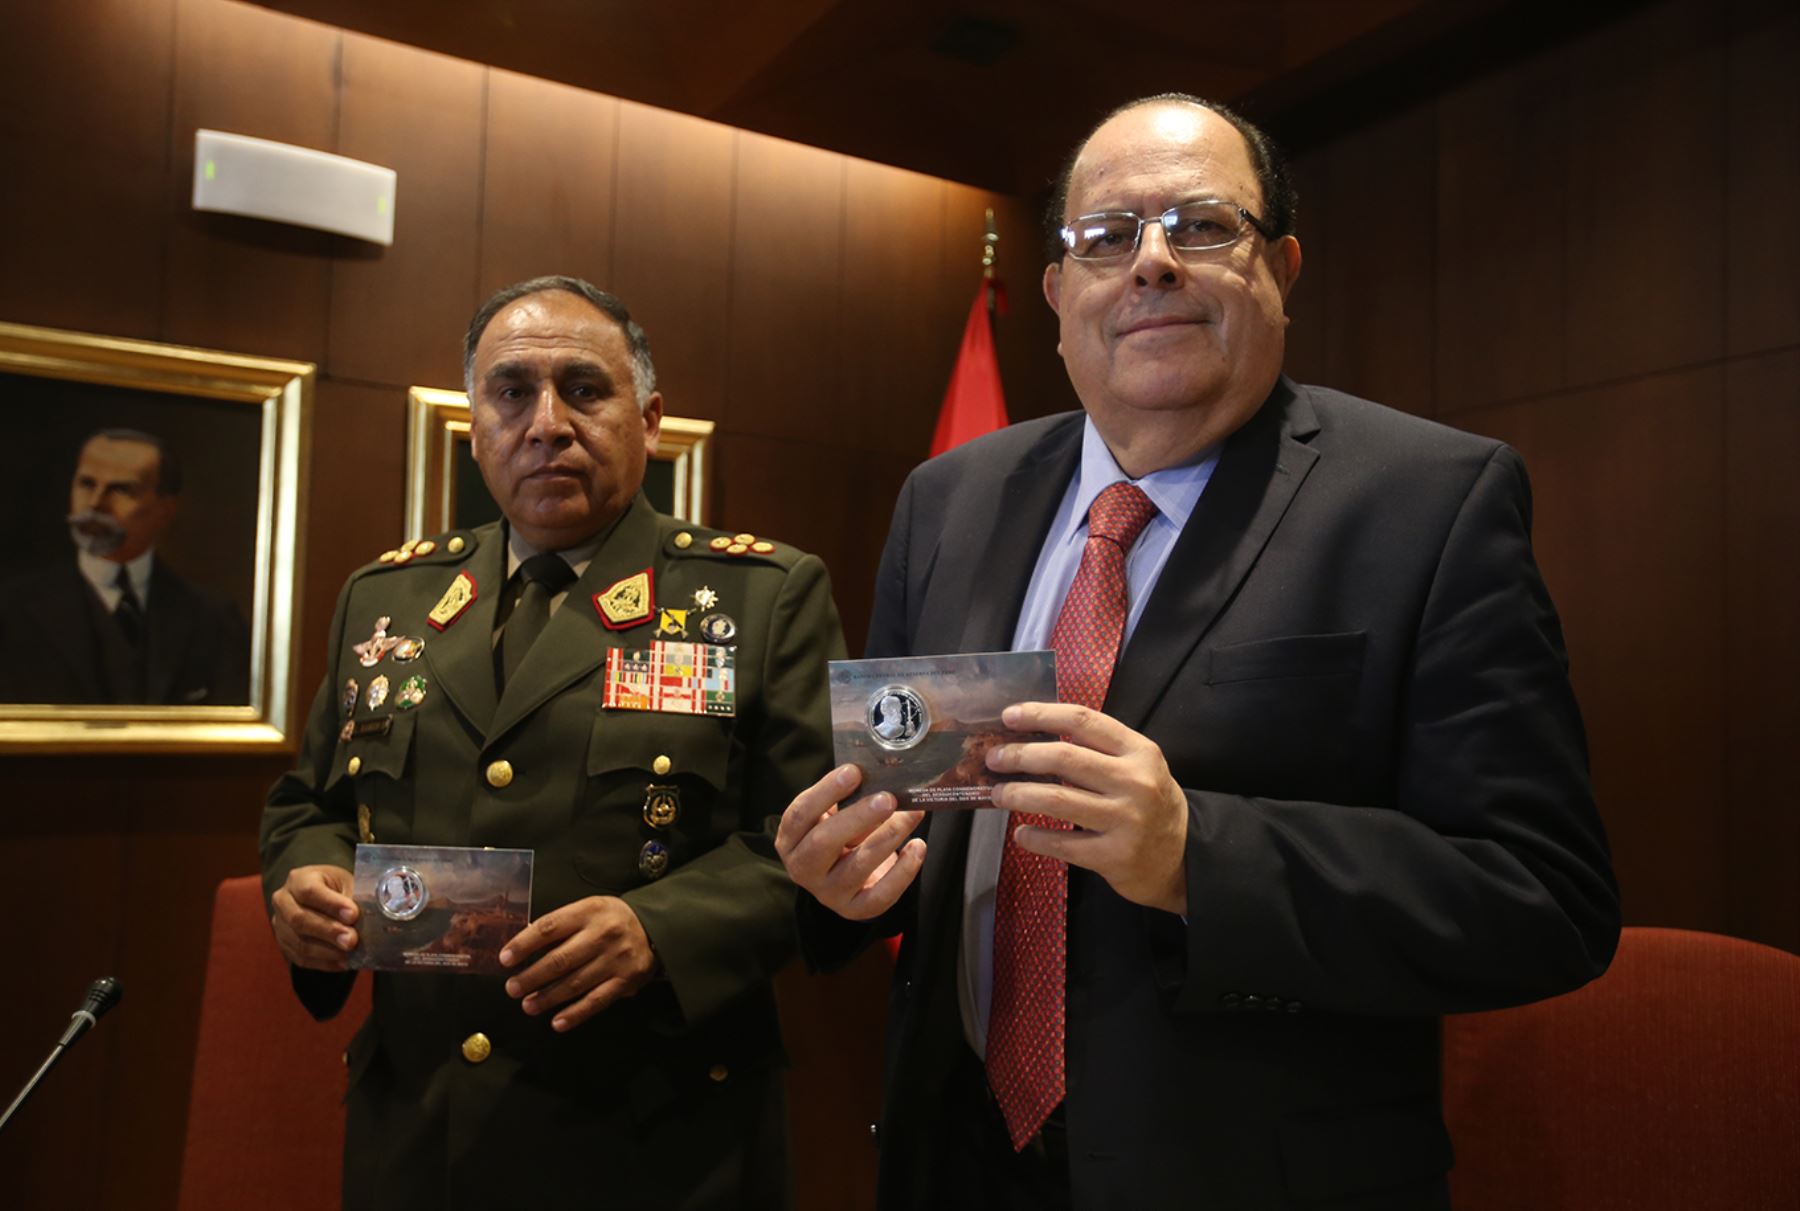 LIMA, PERÚ - ABRIL 29. Banco Central de Reserva emite moneda conmemorativa de victoria del Dos de Mayo

Foto: ANDINA/Juan Carlos Guzmán Negrini.